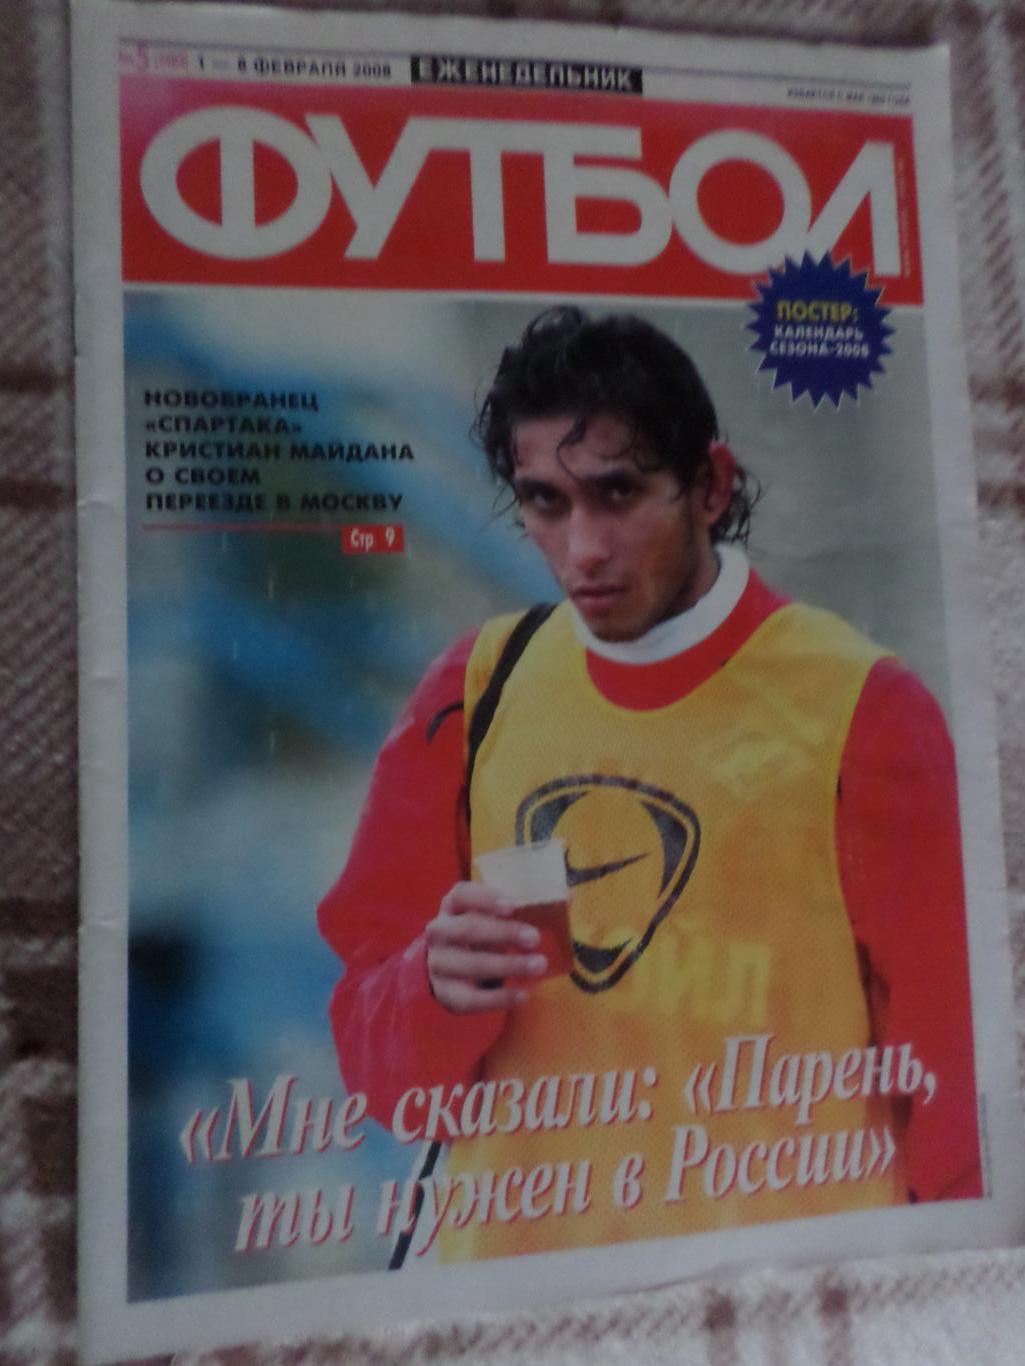 Еженедельник Футбол ( Москва) номер 5, 2008 г